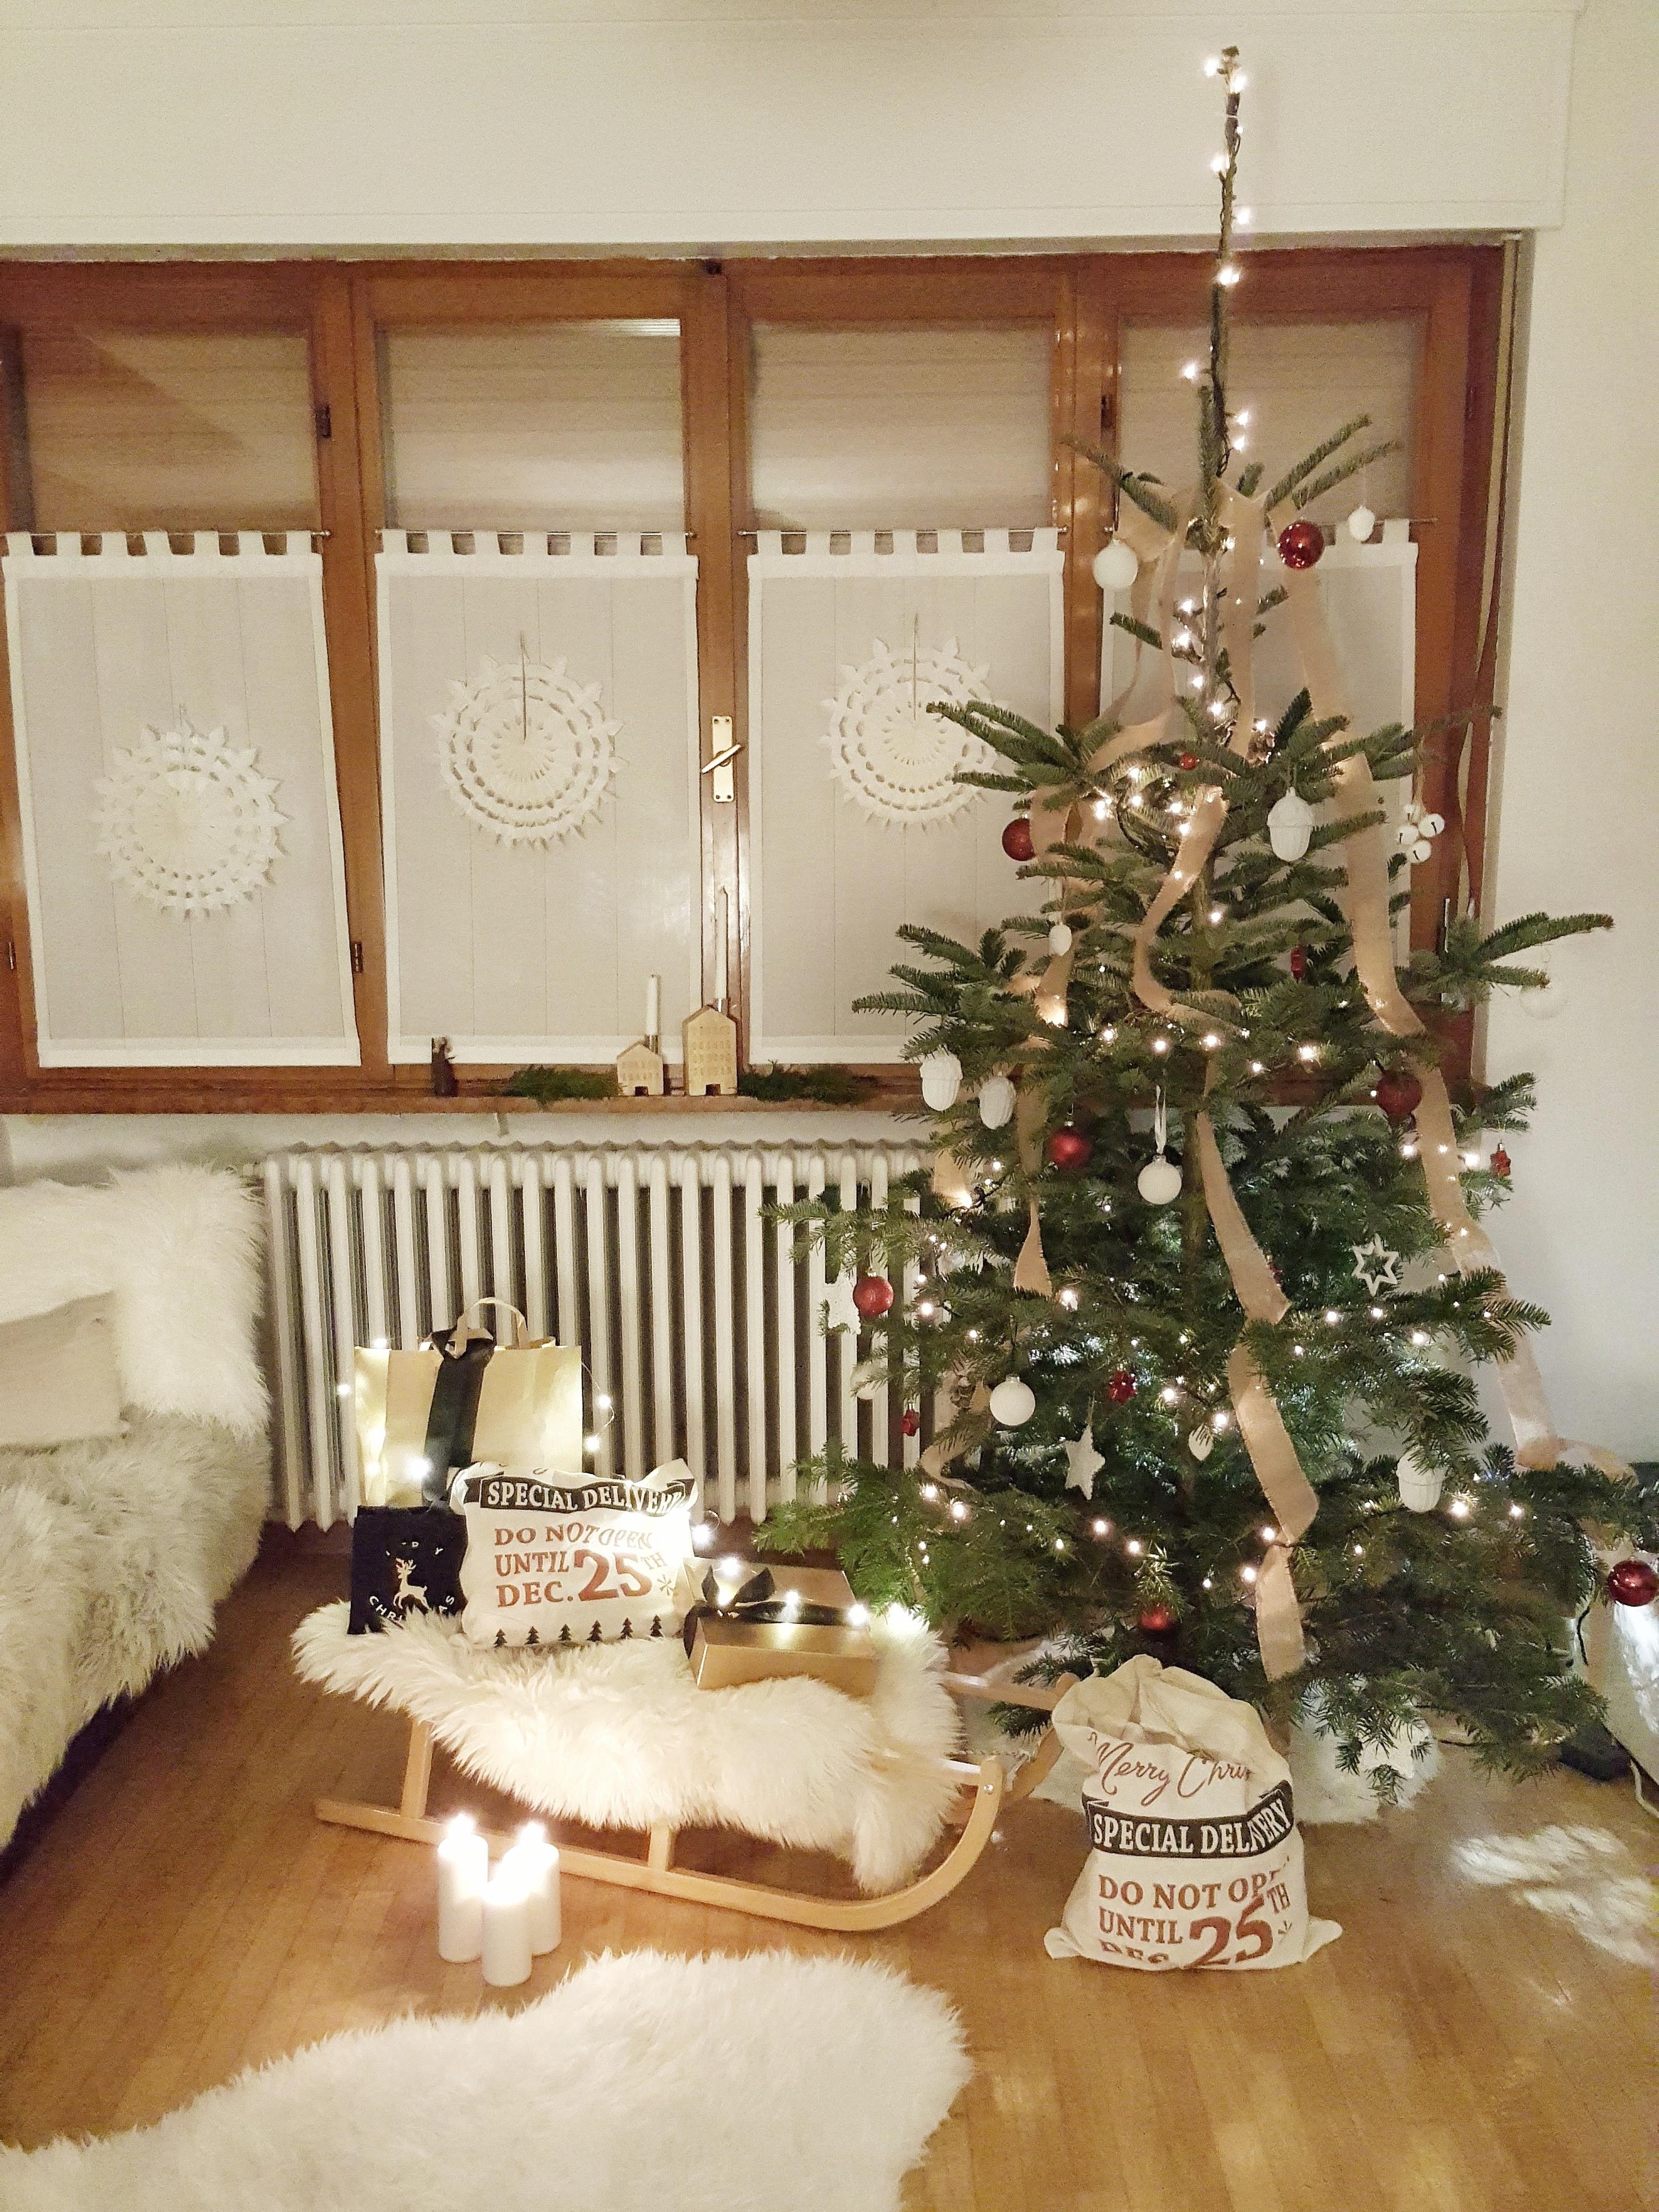 Letztes Jahr... #weihnachten #weihnachtsbaum #couchstyle #interior #wohnzimmer #weihnachtsdeko #xmas #hygge #cozy